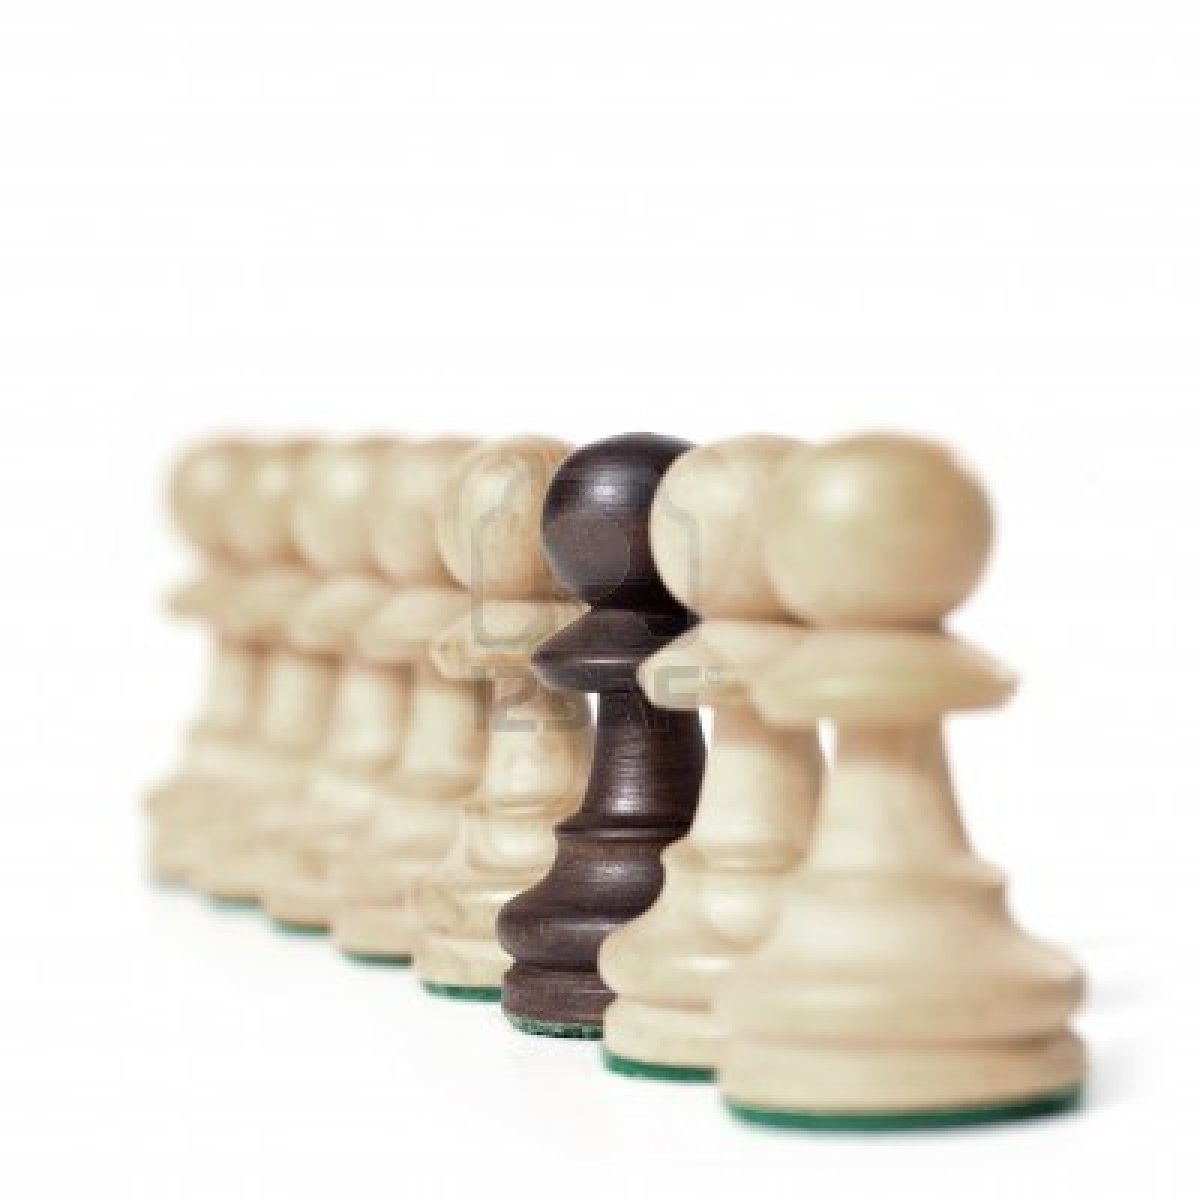 Peça d'escacs. Font: es.123rf.com